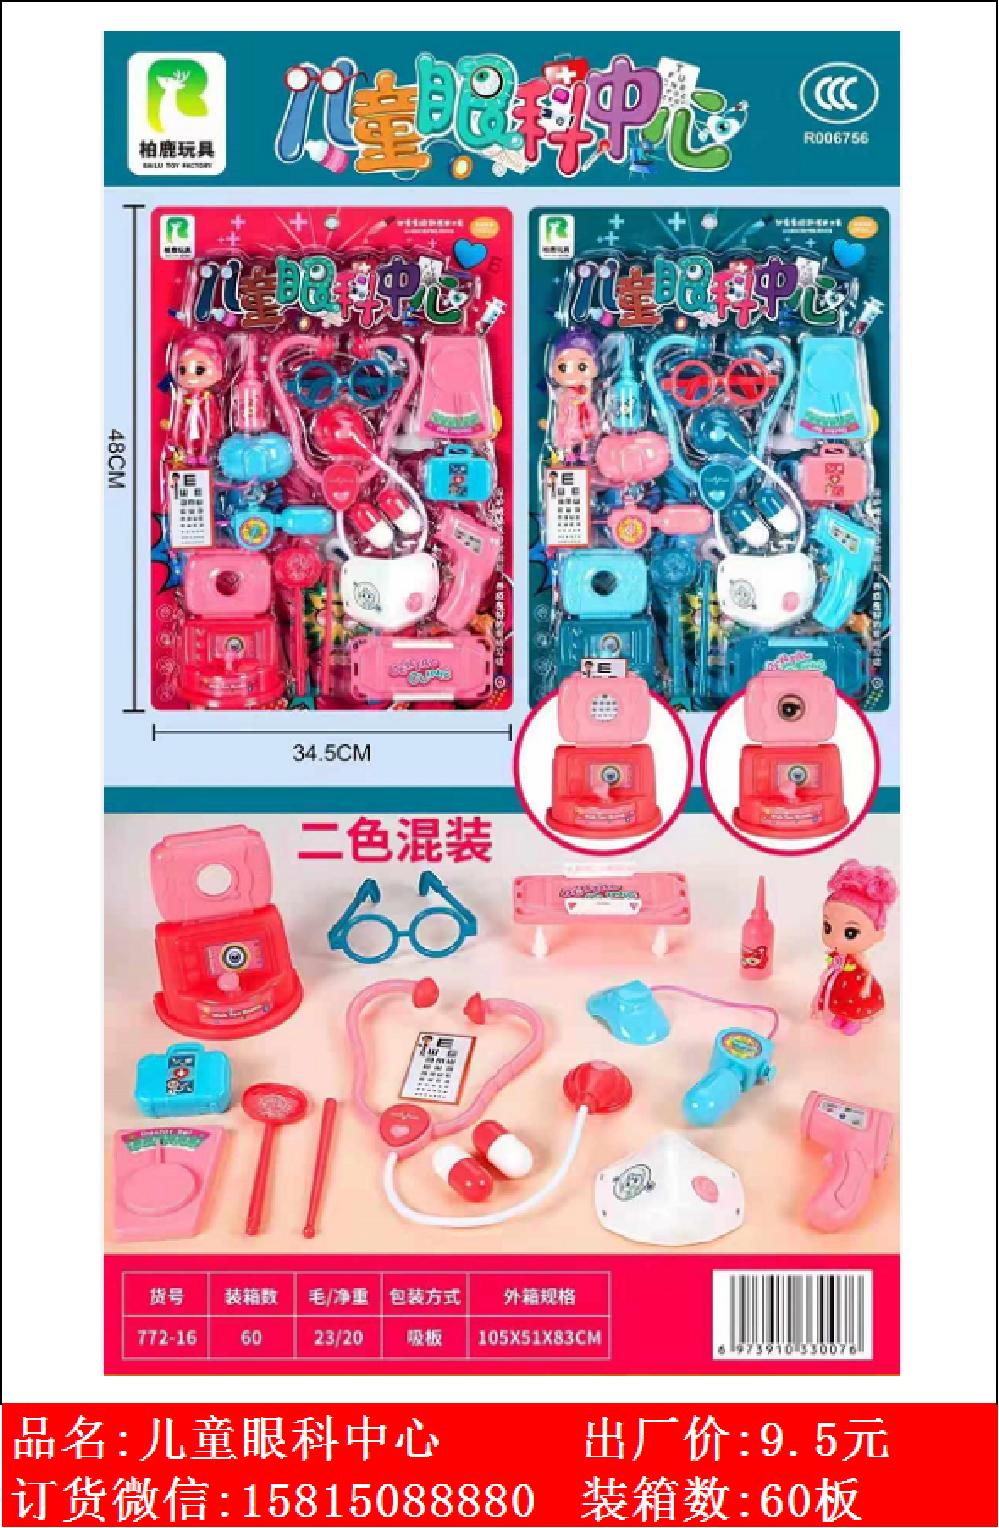 Xinle’er children’s eye center family medical tools and toys